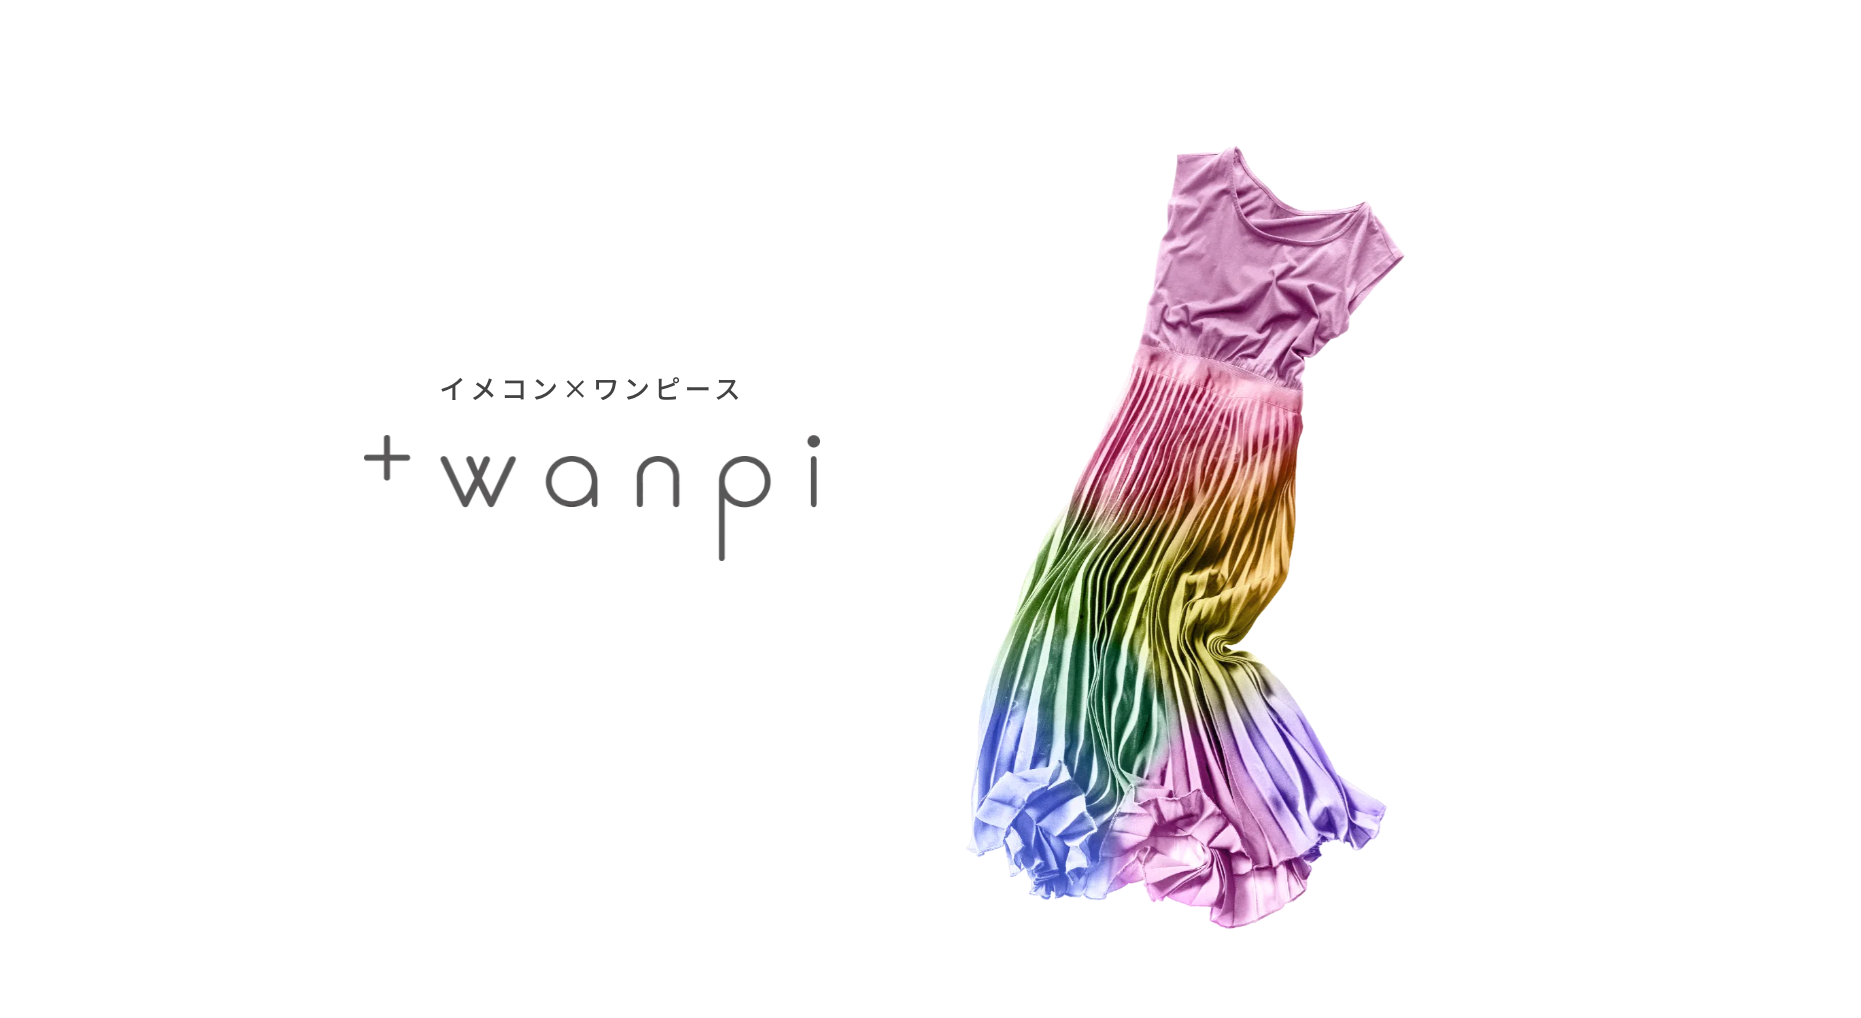 イメコン ワンピース専門のファッションレンタルサブスクリプション Wanpi の先行体験モニター募集を開始 株式会社サイバードのプレスリリース